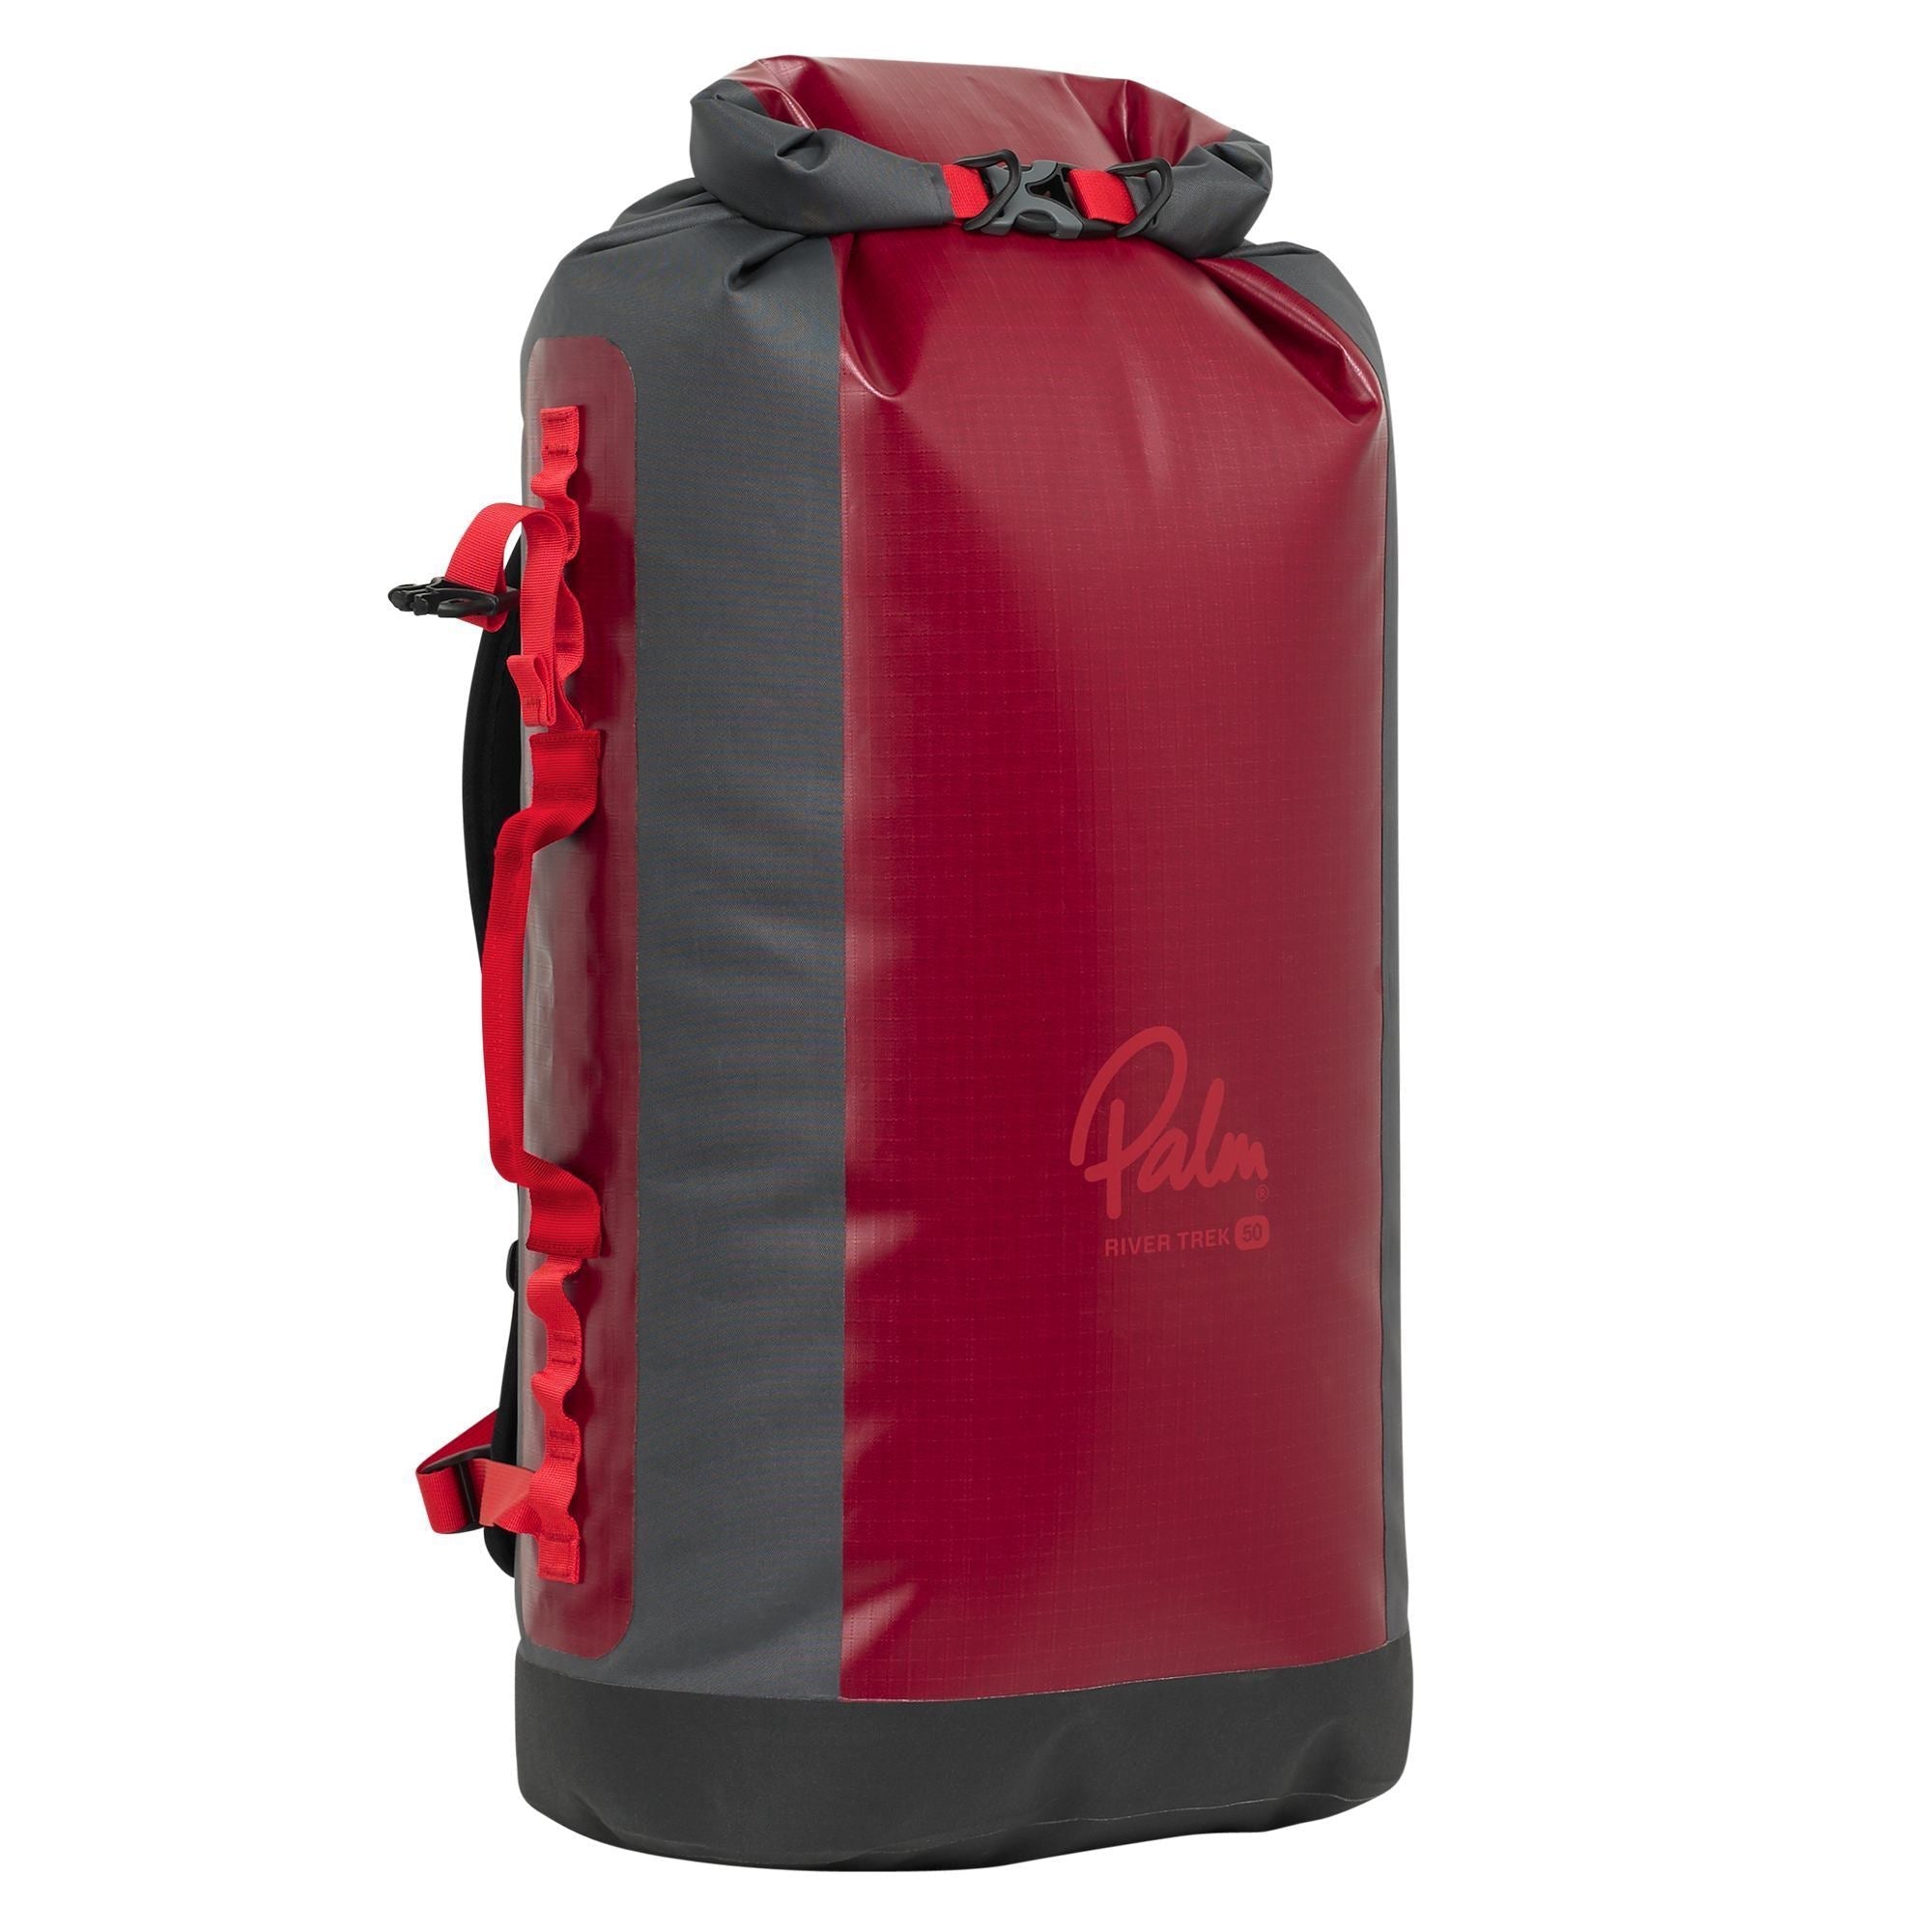 Palm River Trek Waterproof Backpack 50 L